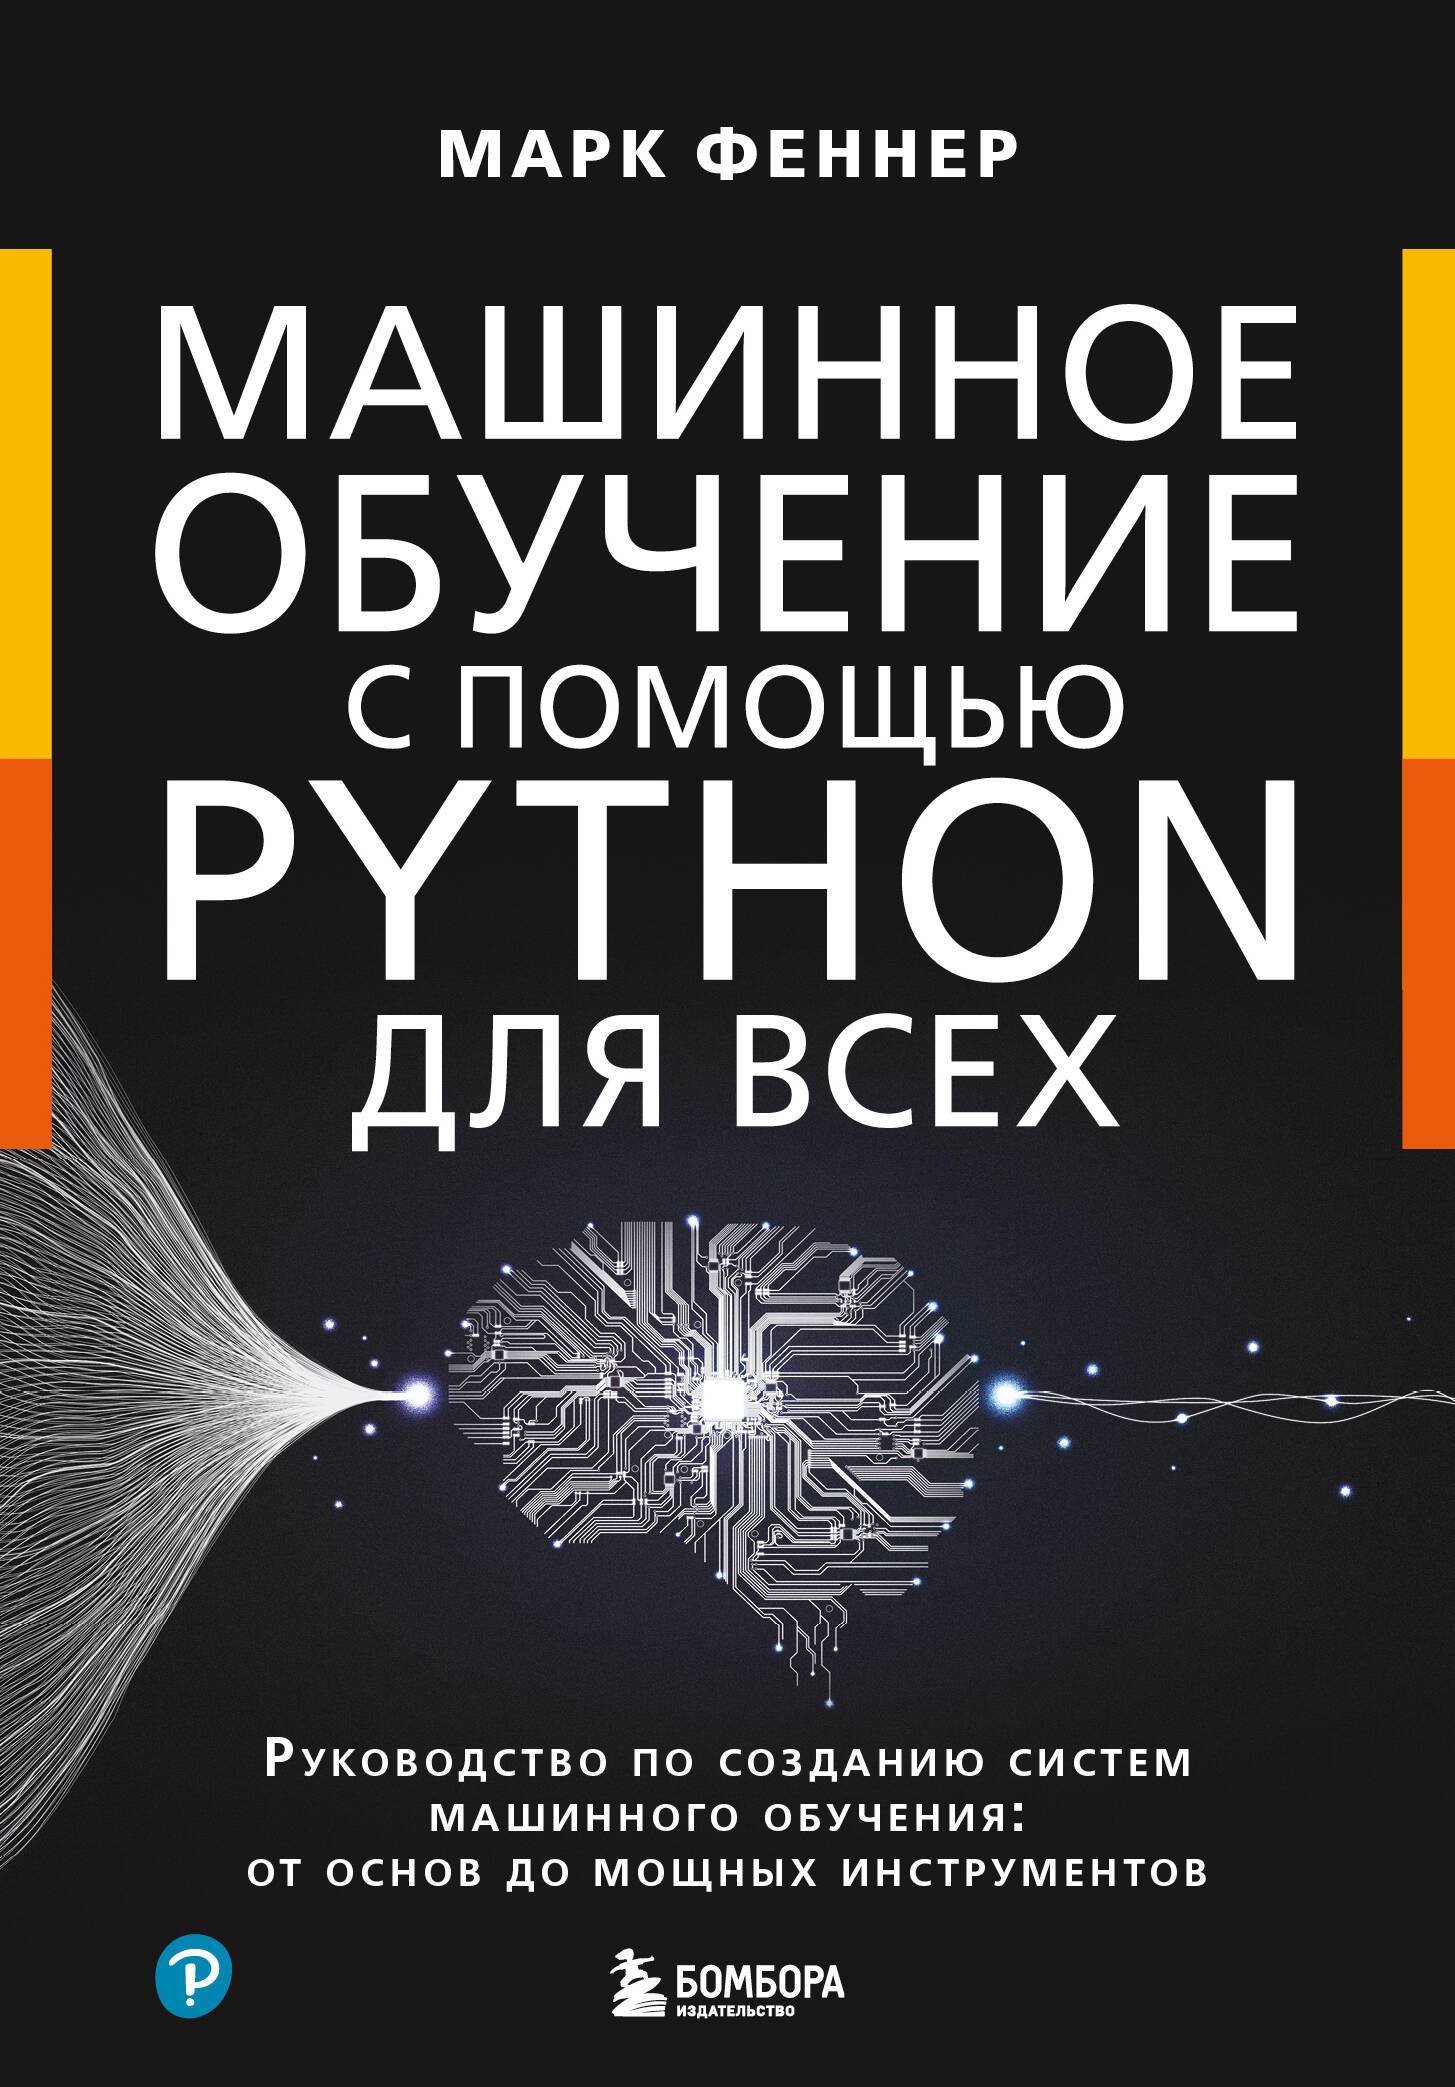     Python  .      :     